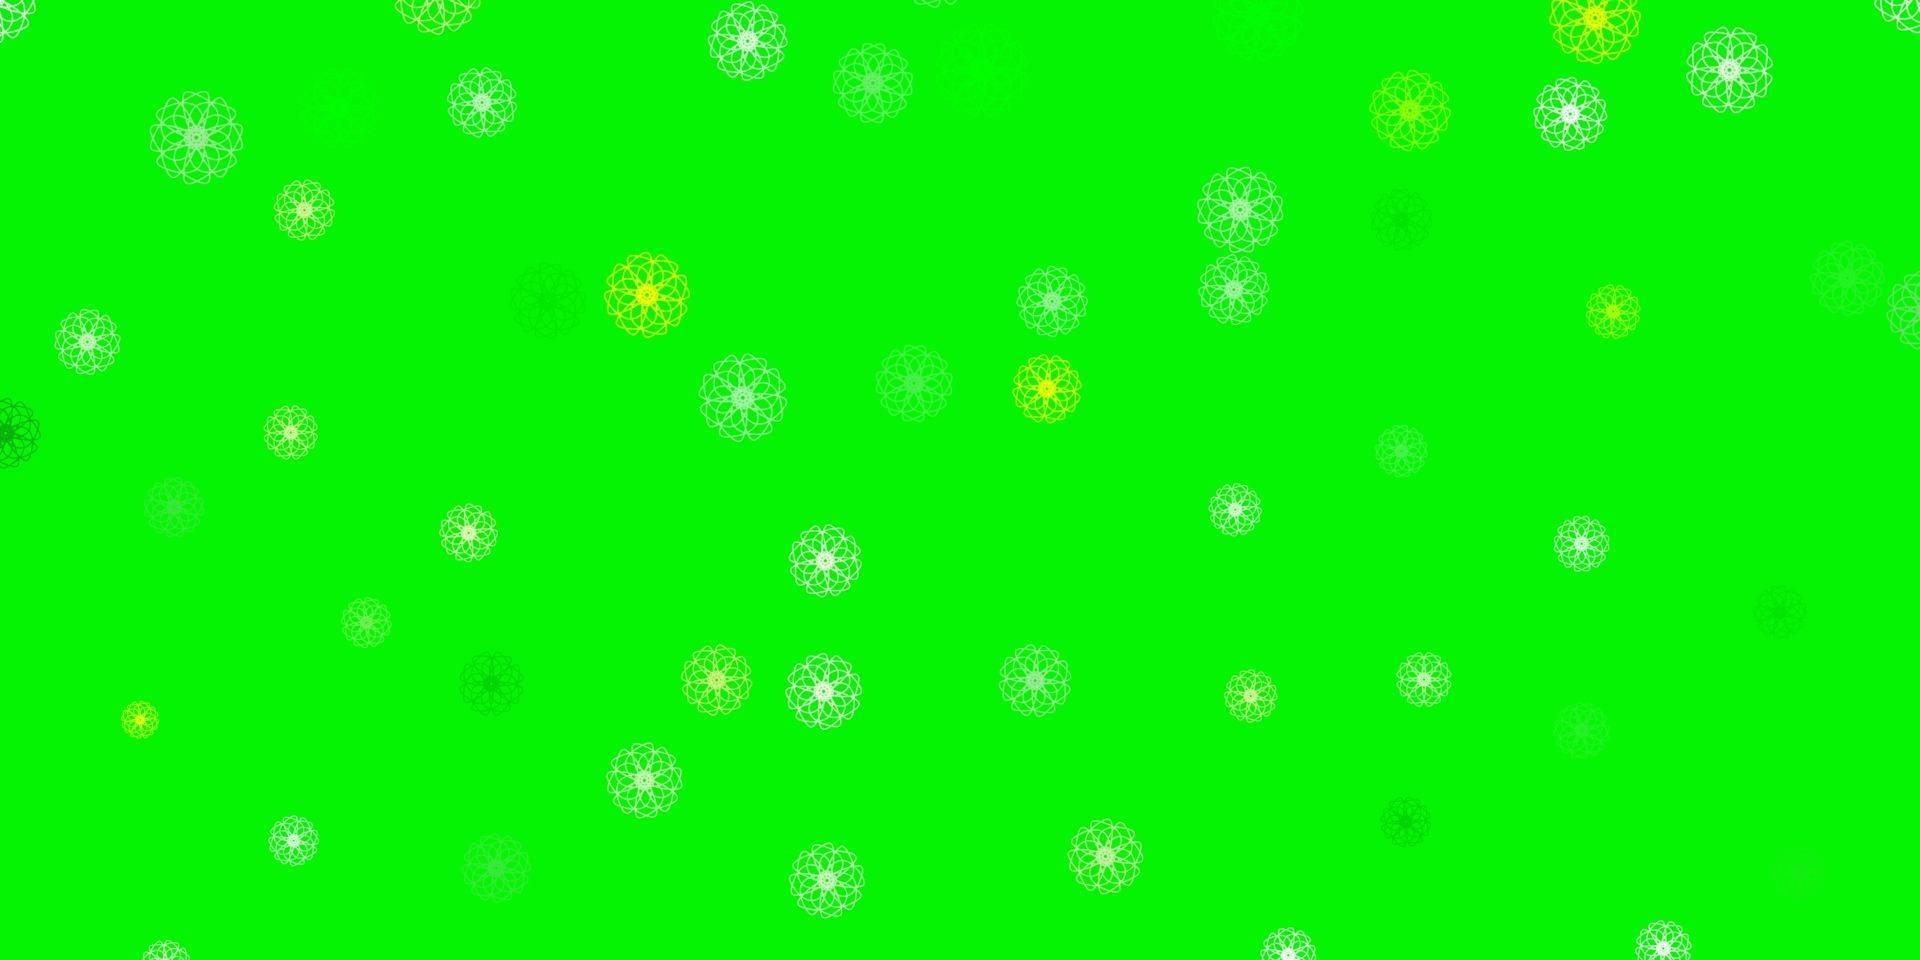 patrón de doodle de vector verde claro, amarillo con flores.